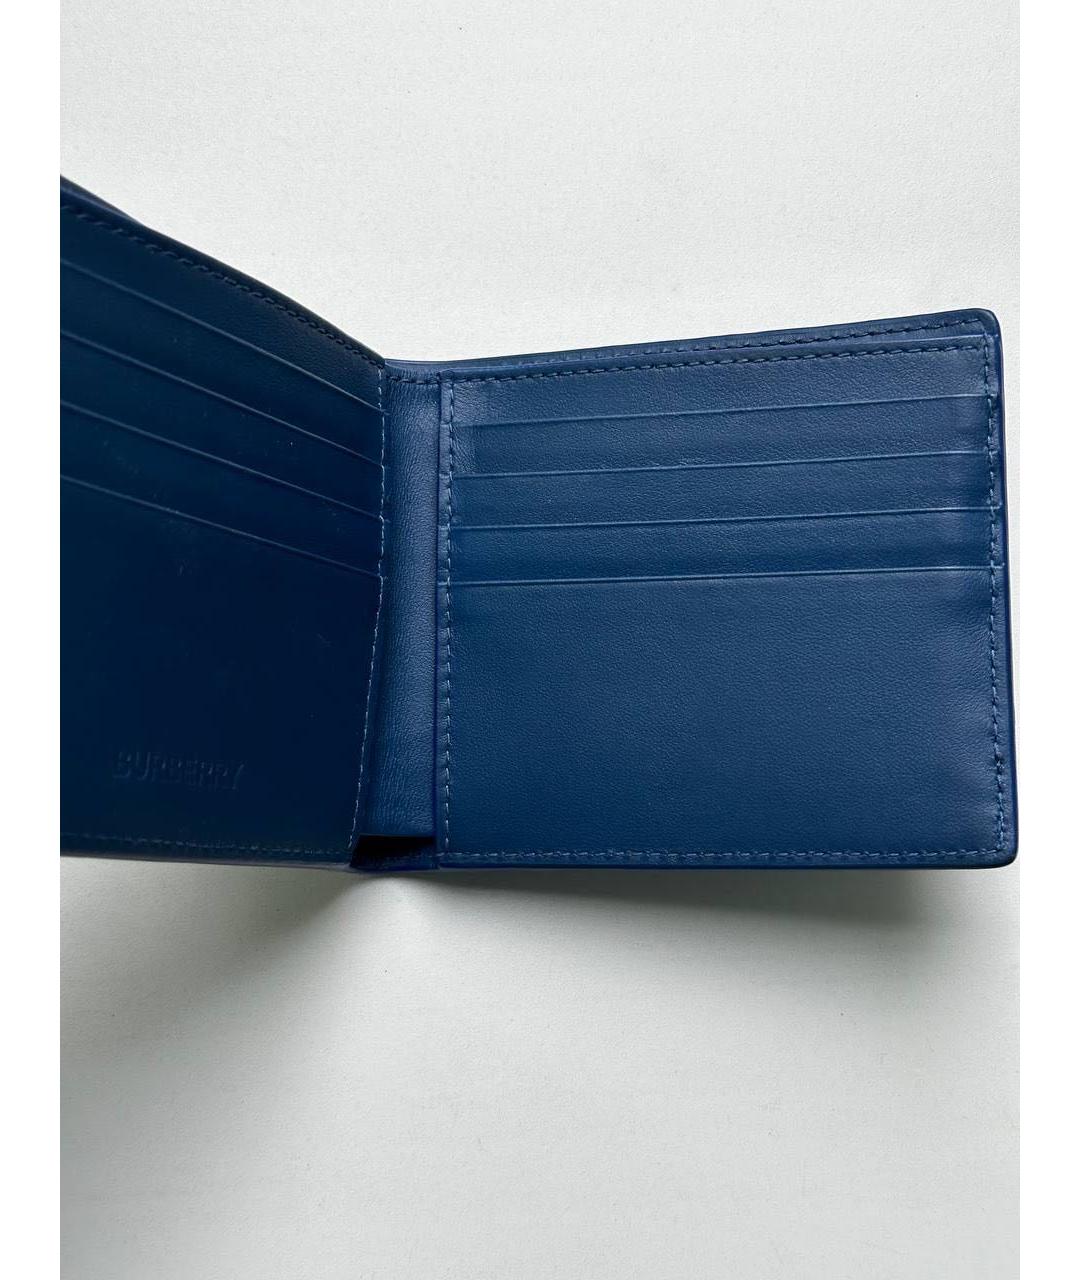 BURBERRY Темно-синий кожаный кошелек, фото 4